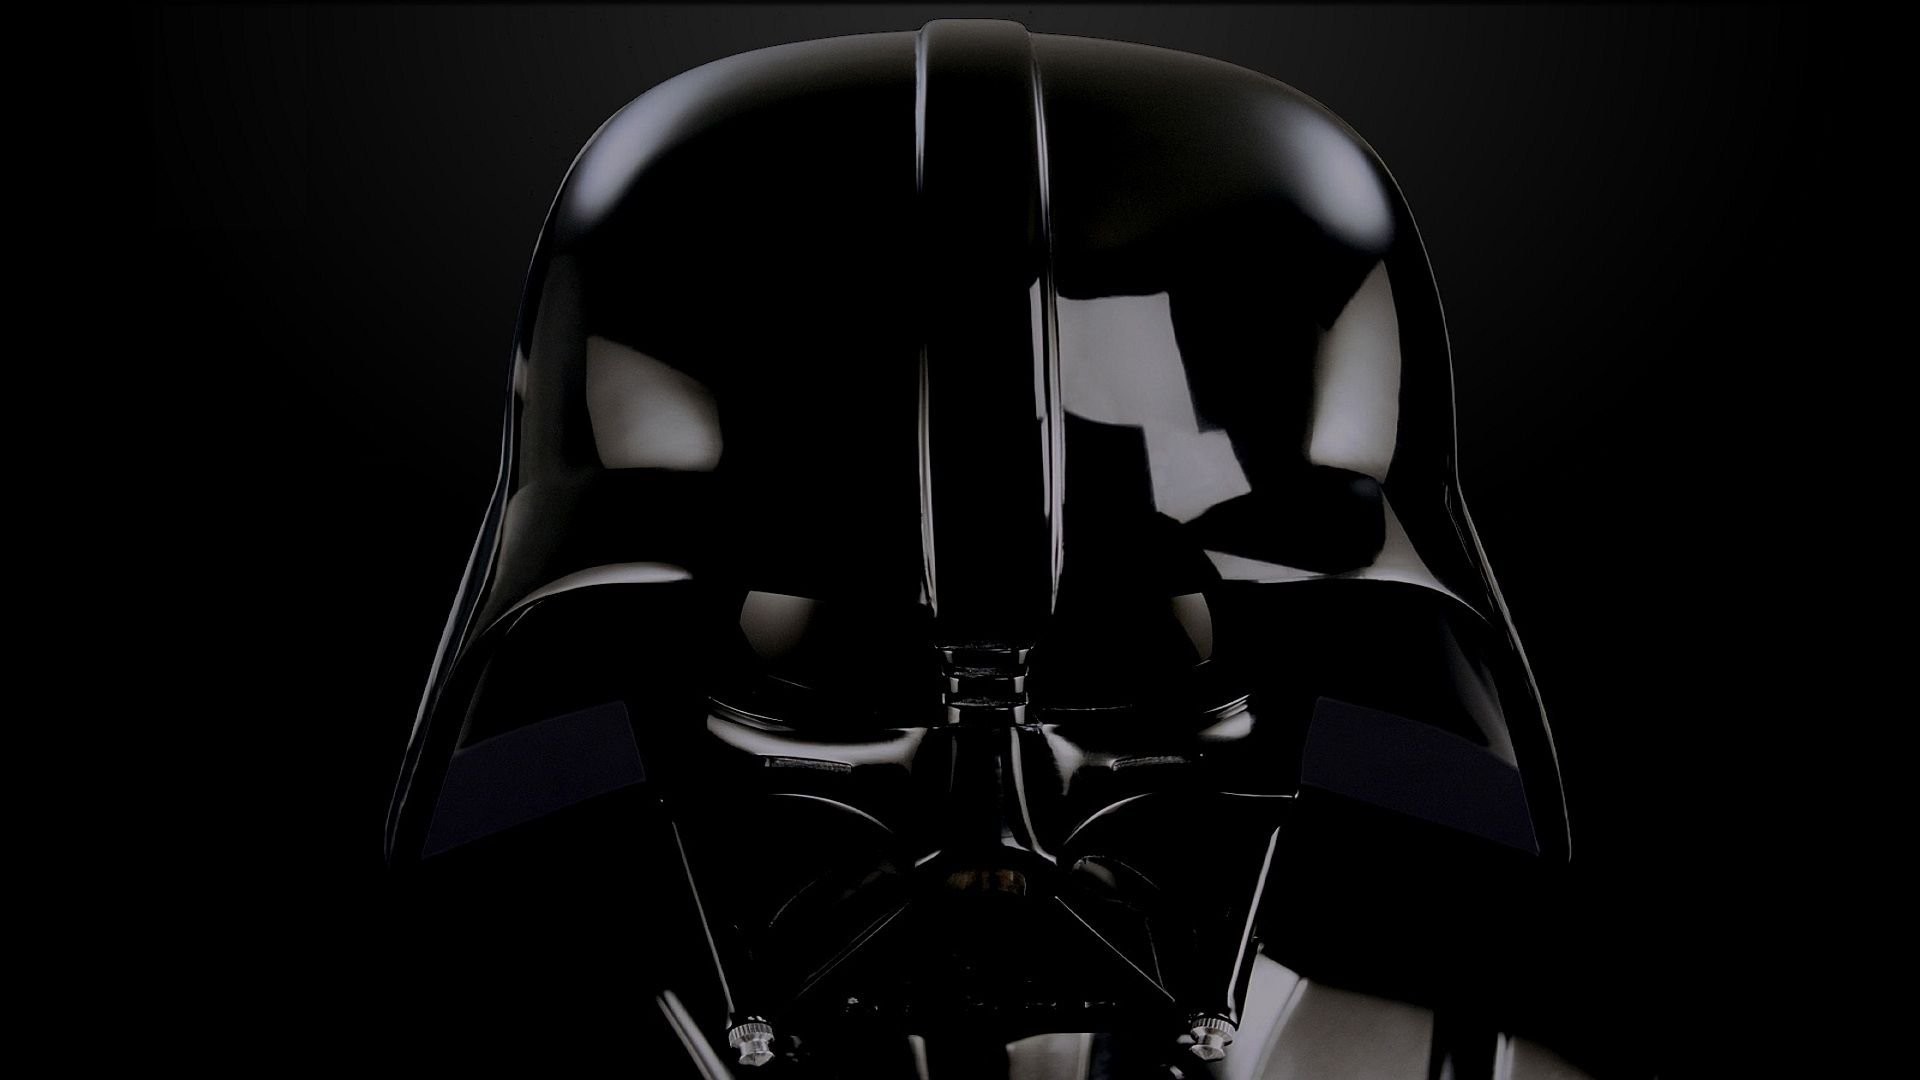 2560×1440 Darth Vader Star Wars Mask Helmet Wallpapers